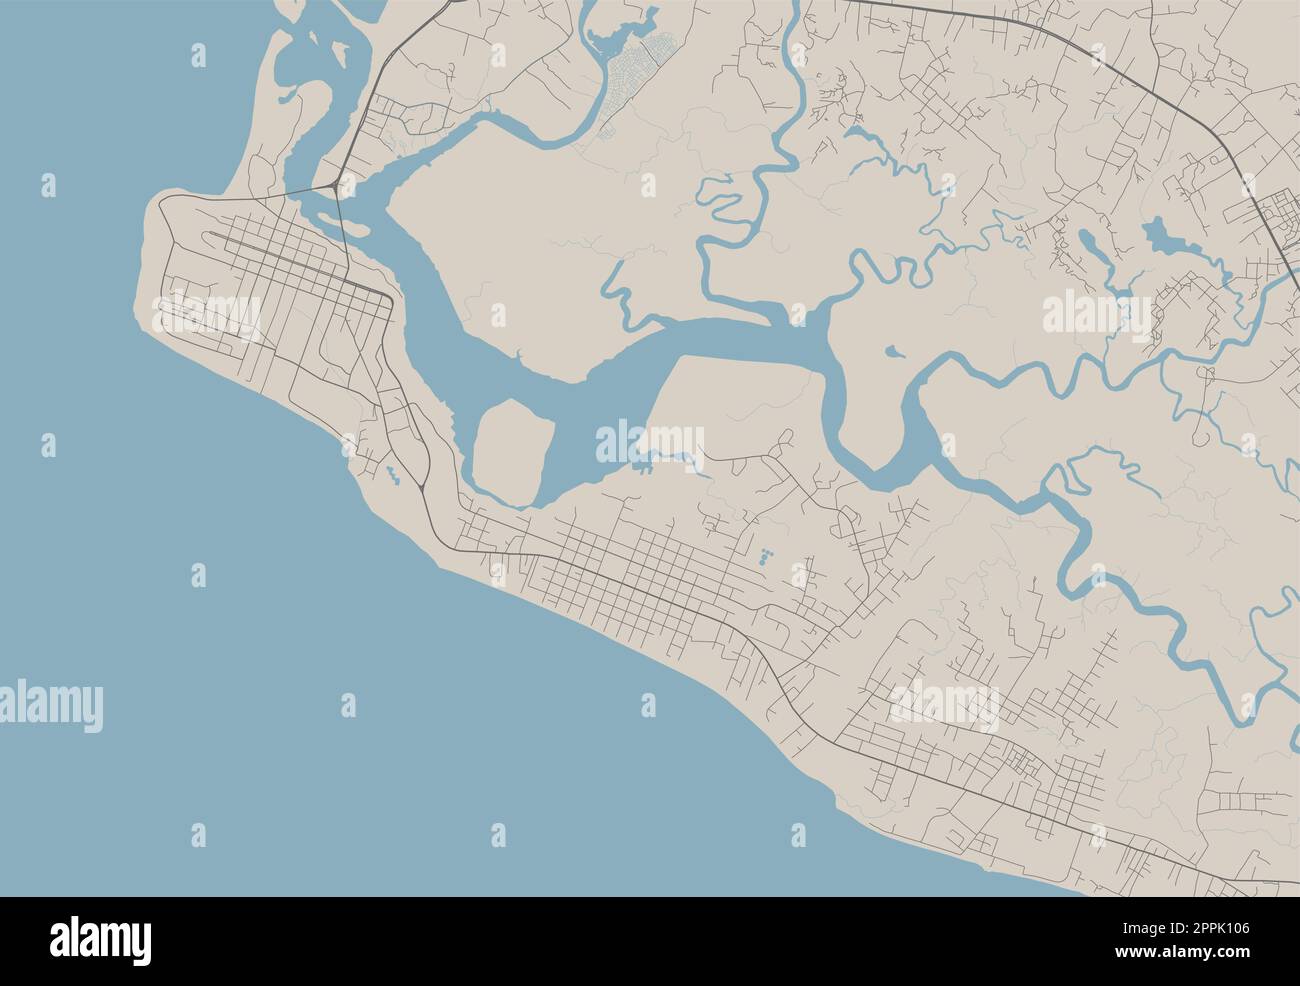 Mappa dettagliata di Monrovia, capitale della Liberia. Mappa amministrativa comunale con fiumi e strade, parchi e ferrovie. Illustrazione vettoriale. Illustrazione Vettoriale